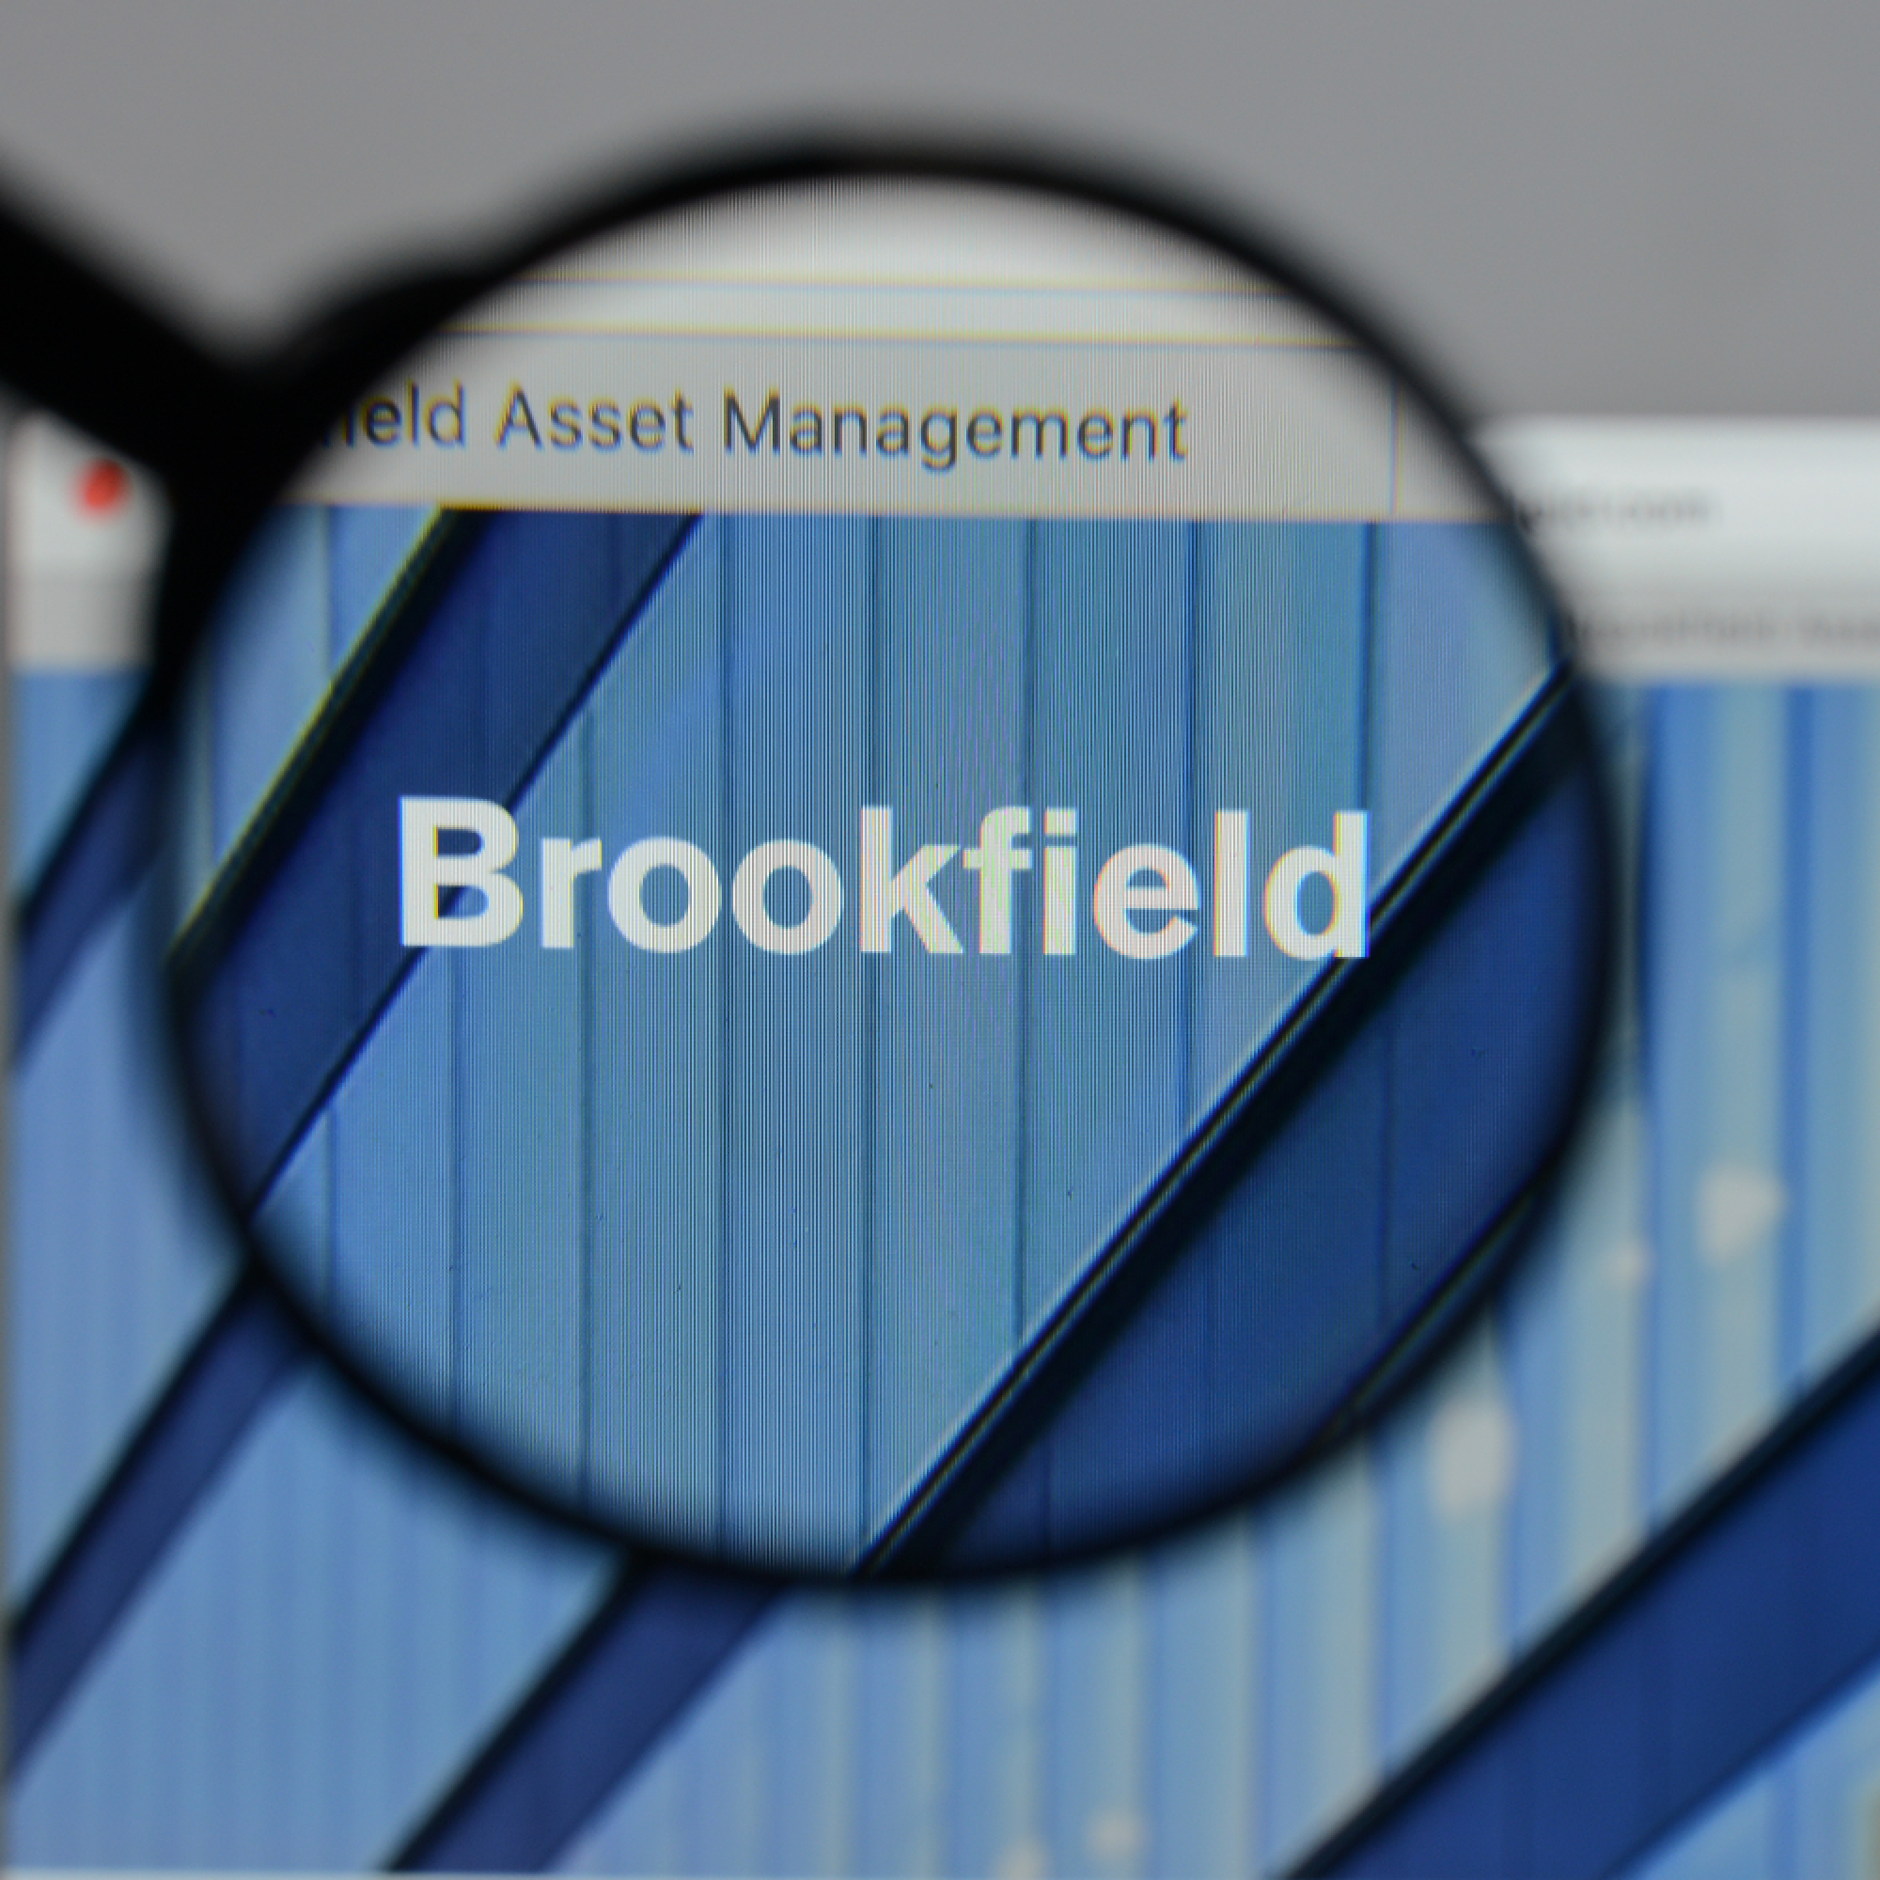  Brookfield иска да купи платежната система Network International за 2,1 млрд. паунда